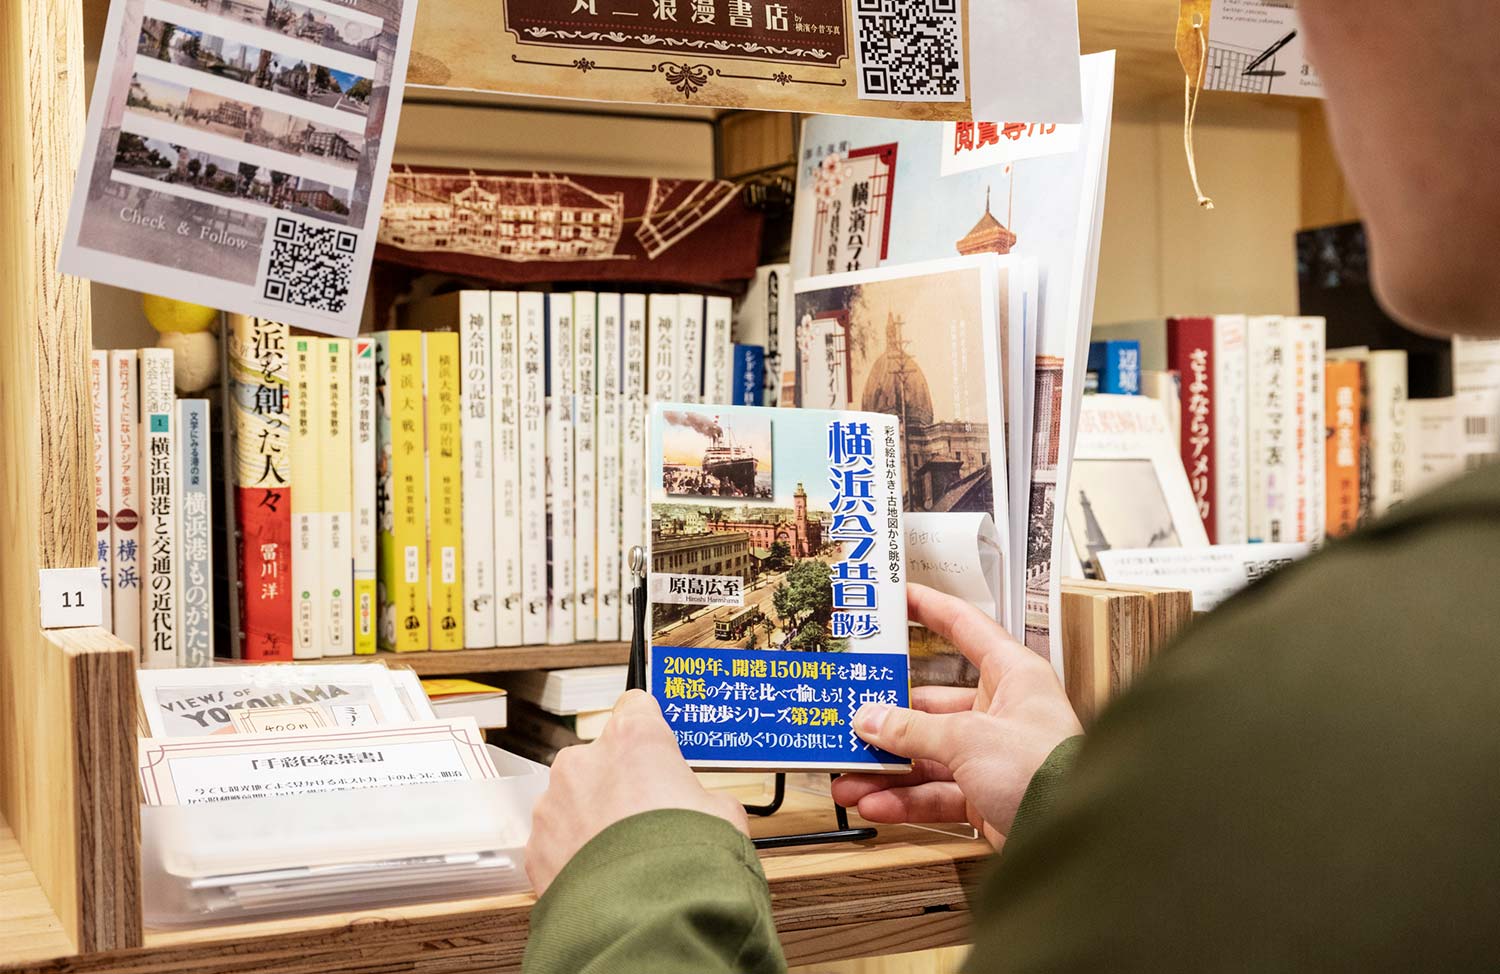 丸二浪漫書店と命名された島田さんの棚。テーマは「横浜の今昔を伝える」。